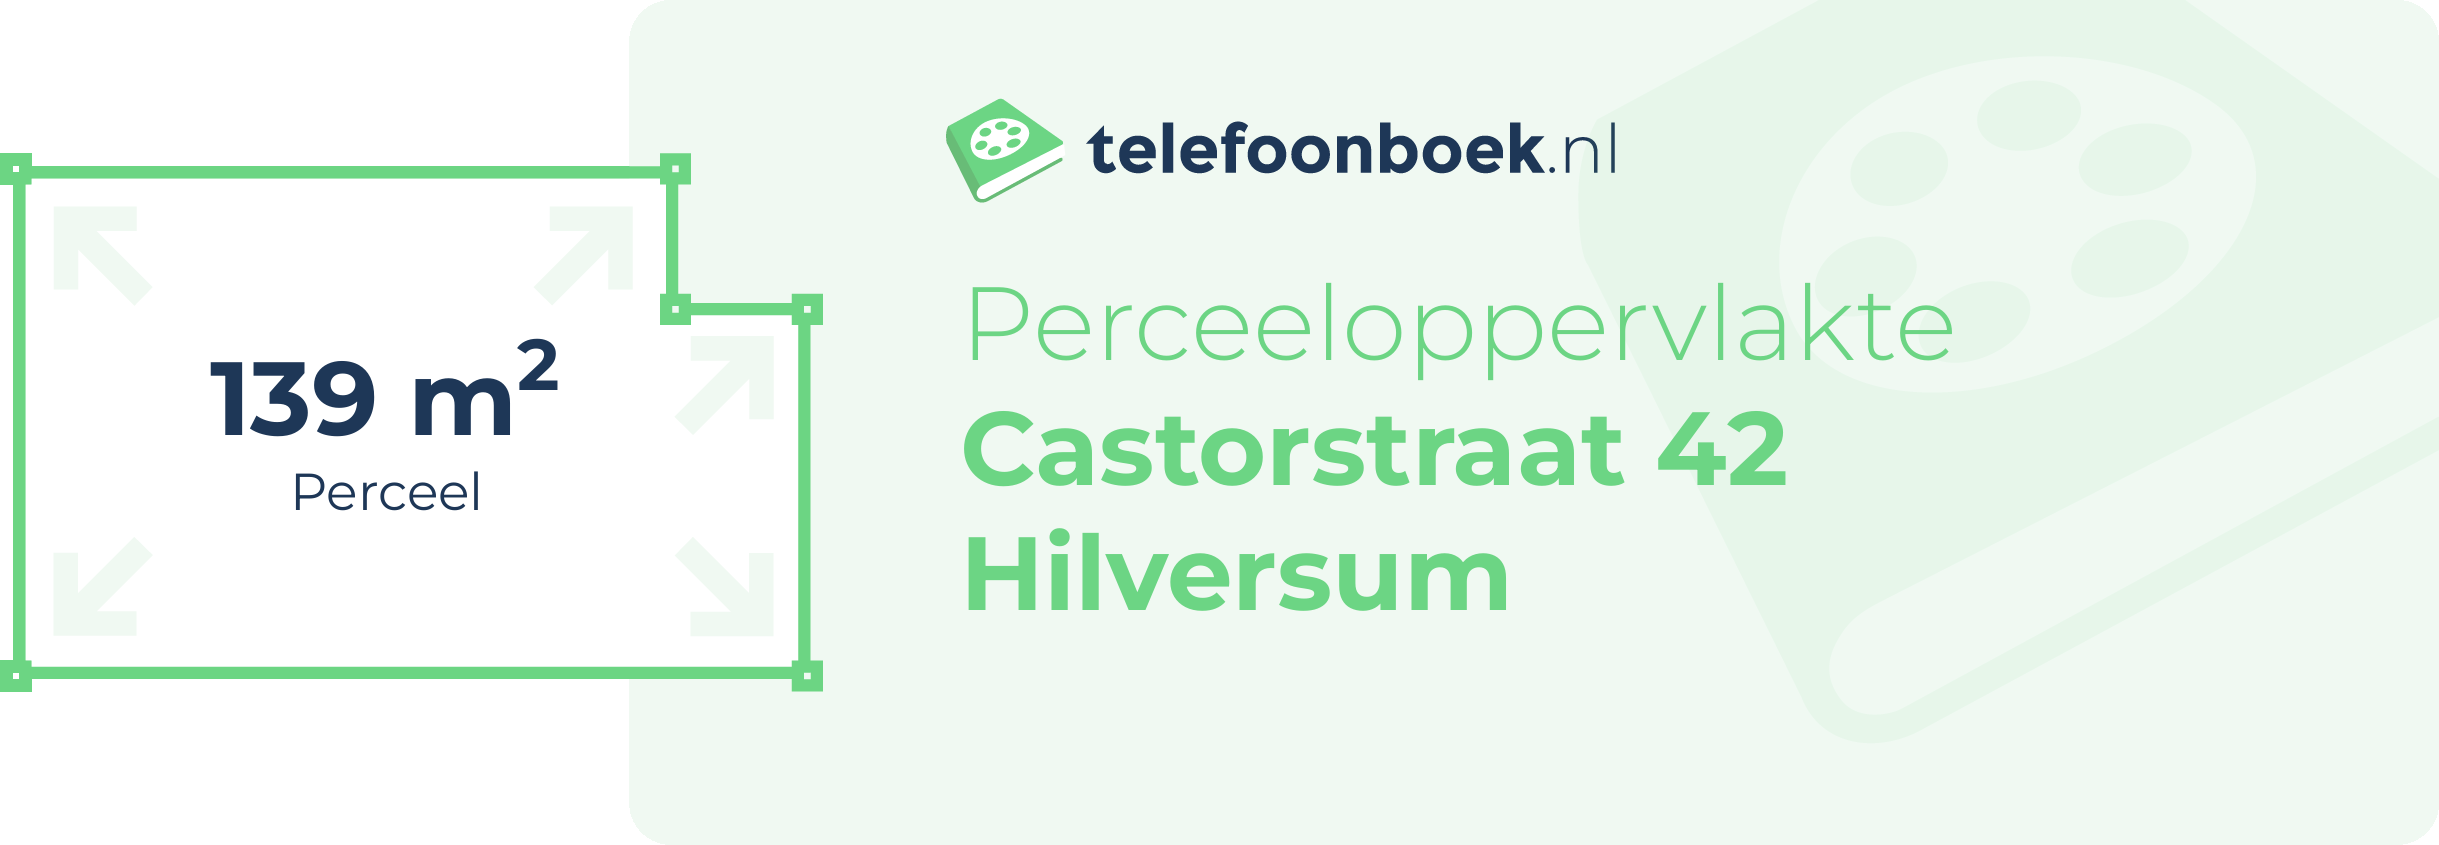 Perceeloppervlakte Castorstraat 42 Hilversum